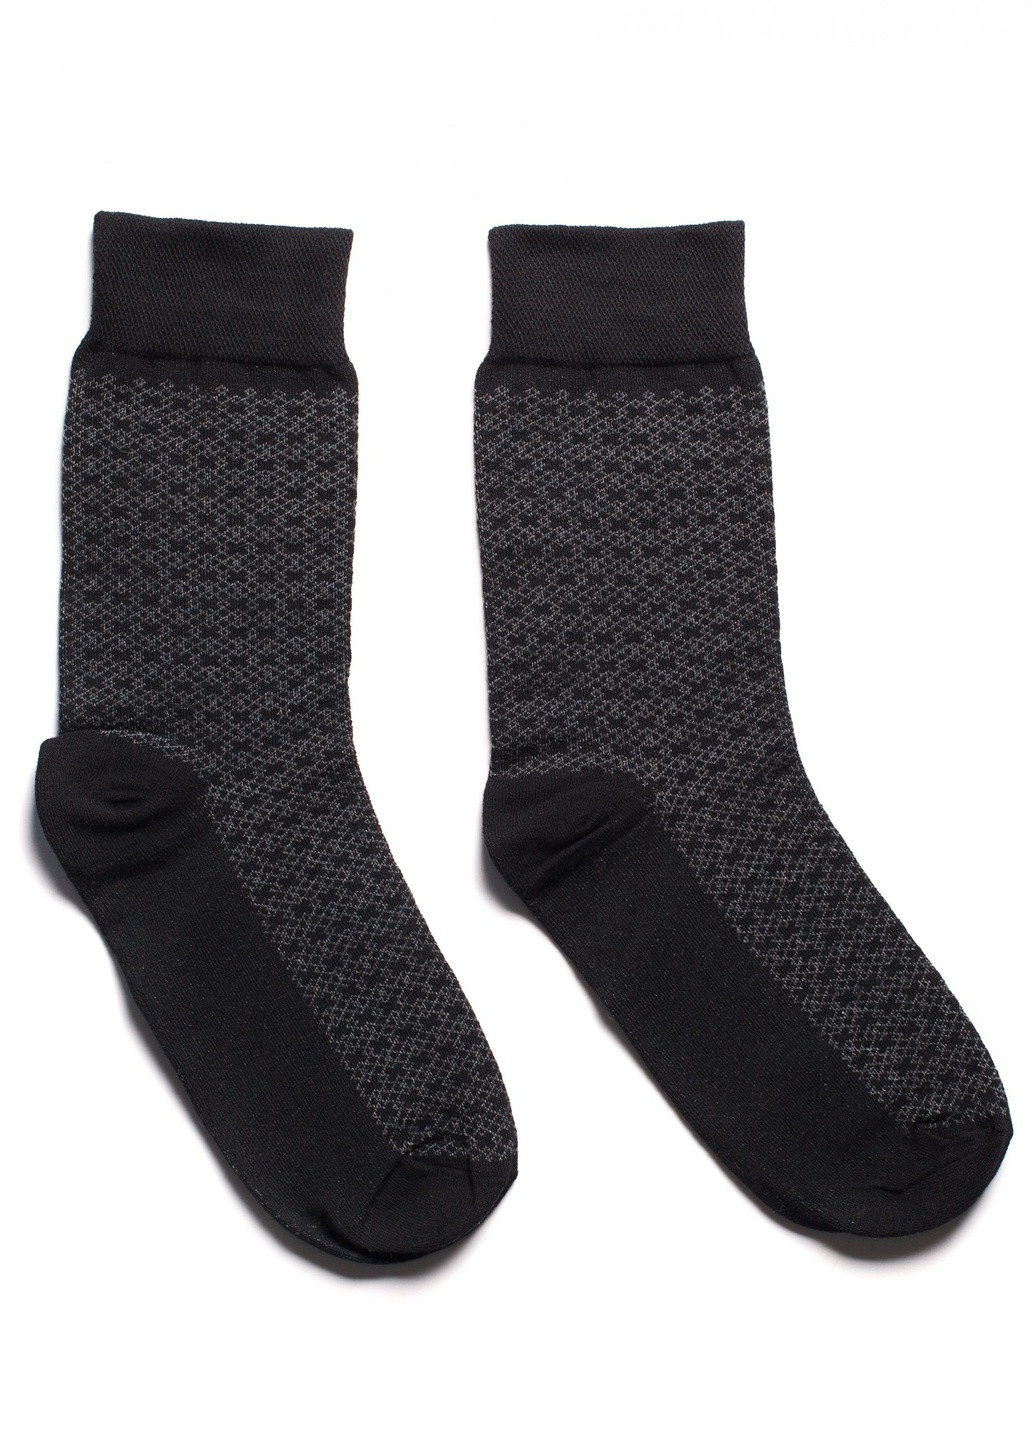 Носки с принтом клетка высокие бесшовные дышащие качественные ORGANIC cotton черные 39-41 men's арт. 31015 JILL ANTONY (258959254)